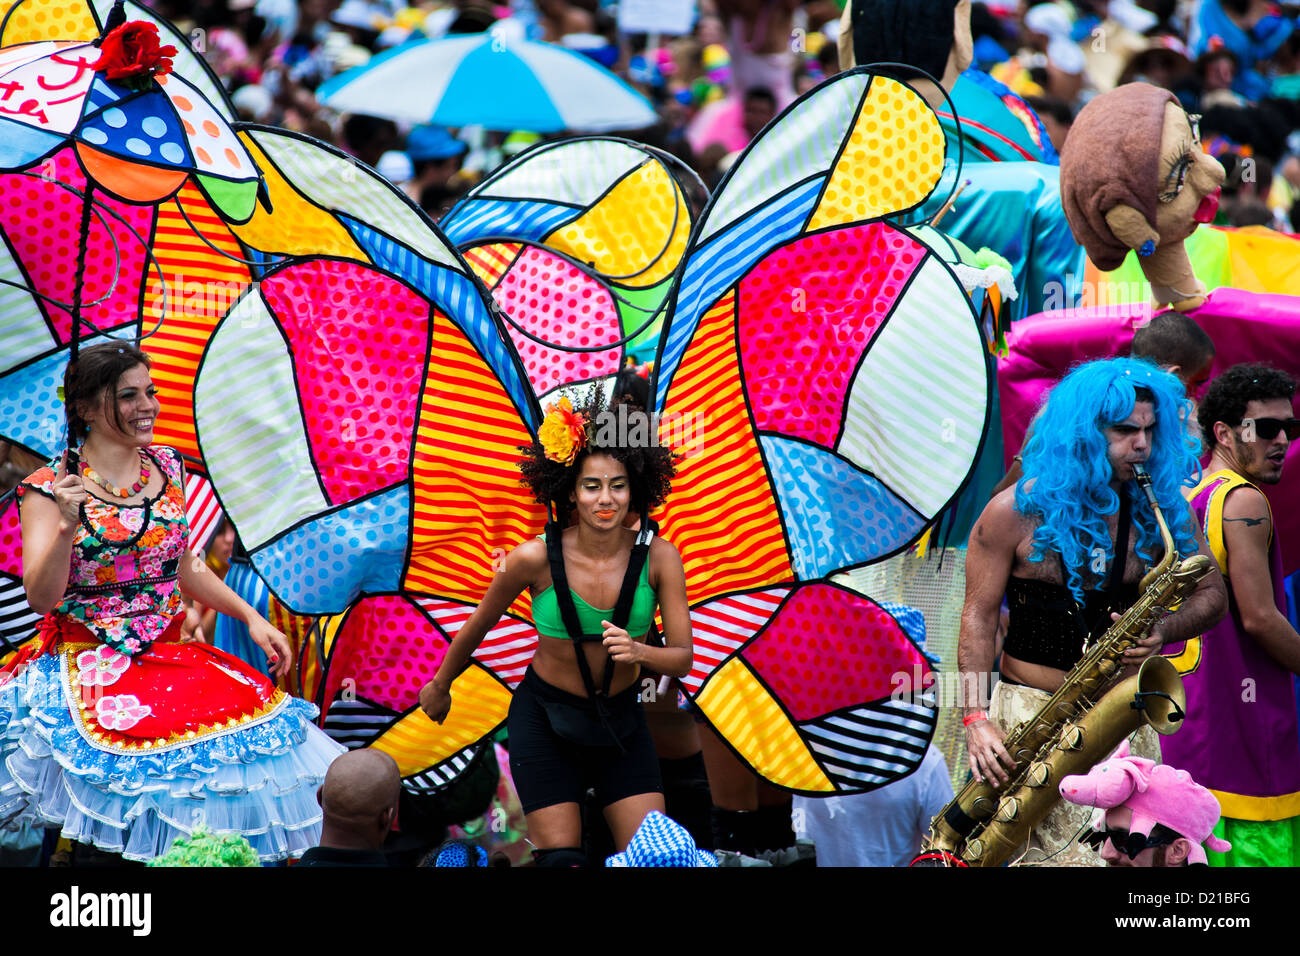 L'orquestra voadora band effectue pendant le carnaval fête de rue à Flamengo, Rio de Janeiro, Brésil. Banque D'Images